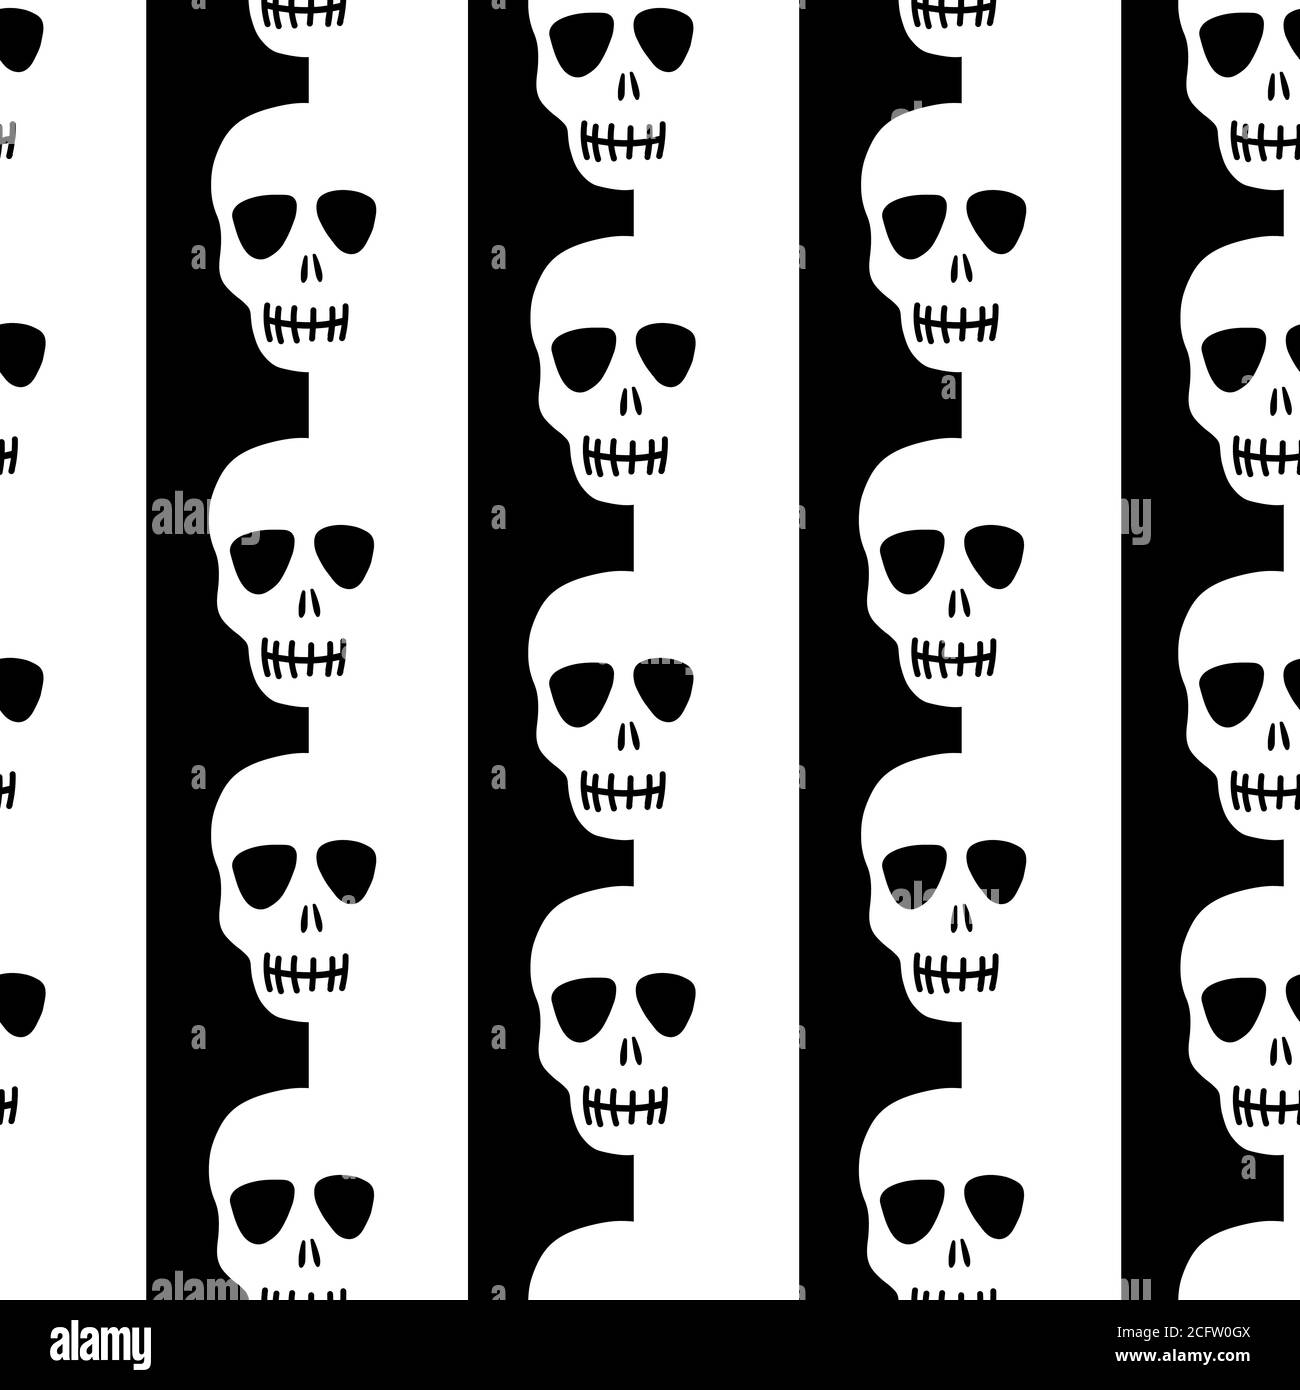 skull pattern. Striped pattern with skulls Stock Vector